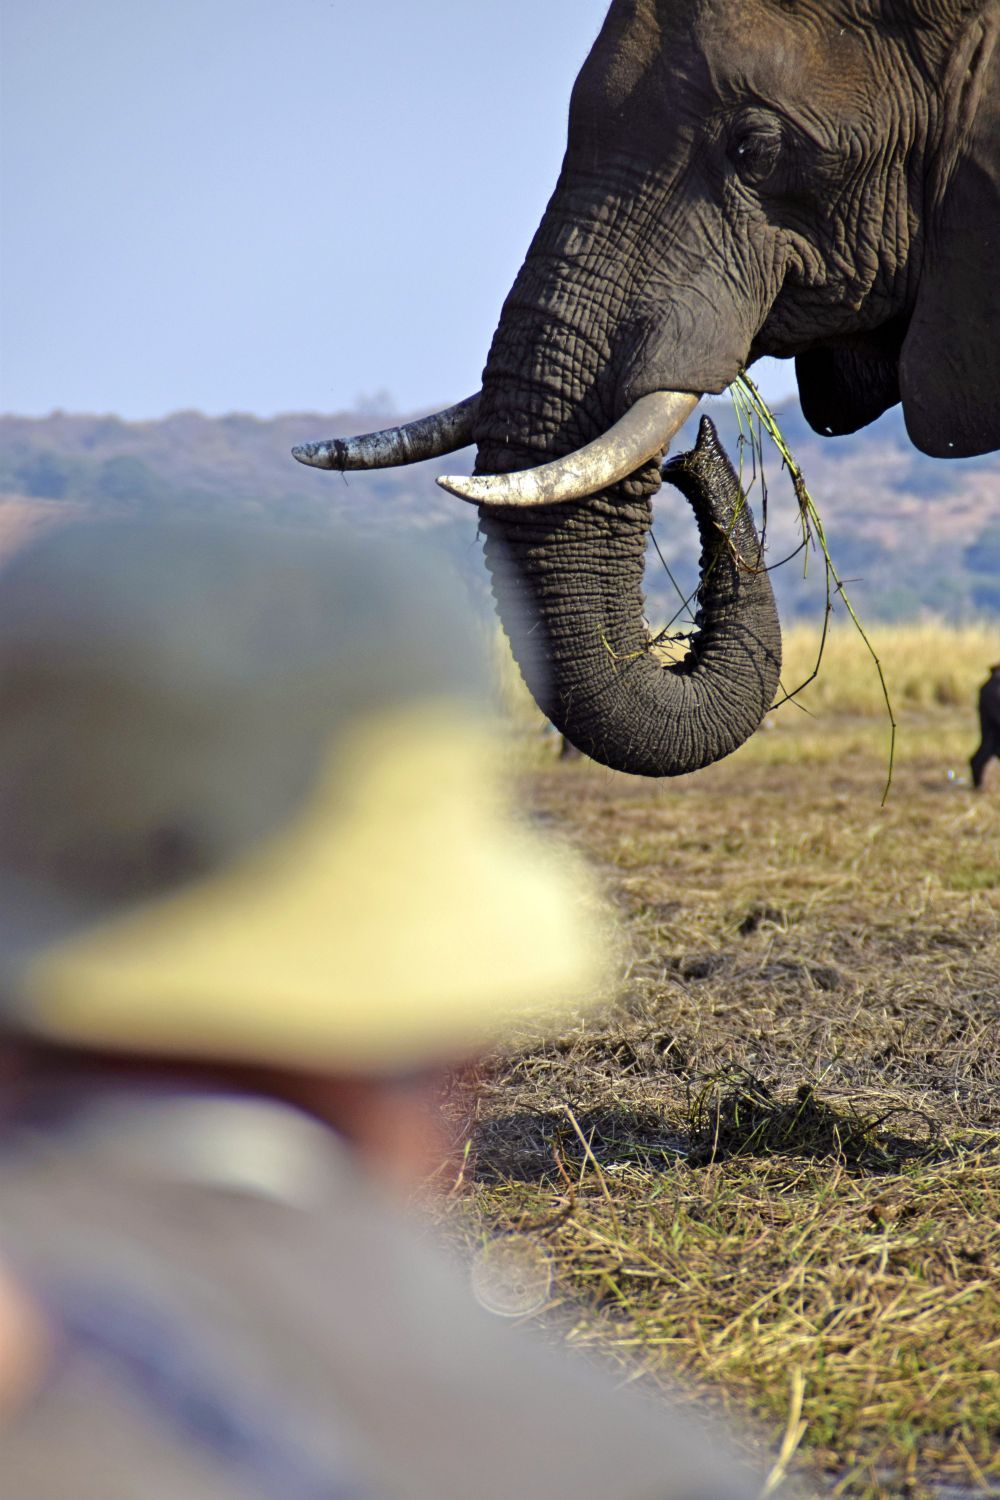 Chobe NP: Näher kann man Elefanten nicht kommen! Bei einer Bootsfahrt auf dem Chobe-Fluss glaubt man, die grasenden Riesen auf der Sedudu-Insel fast zu berühren.